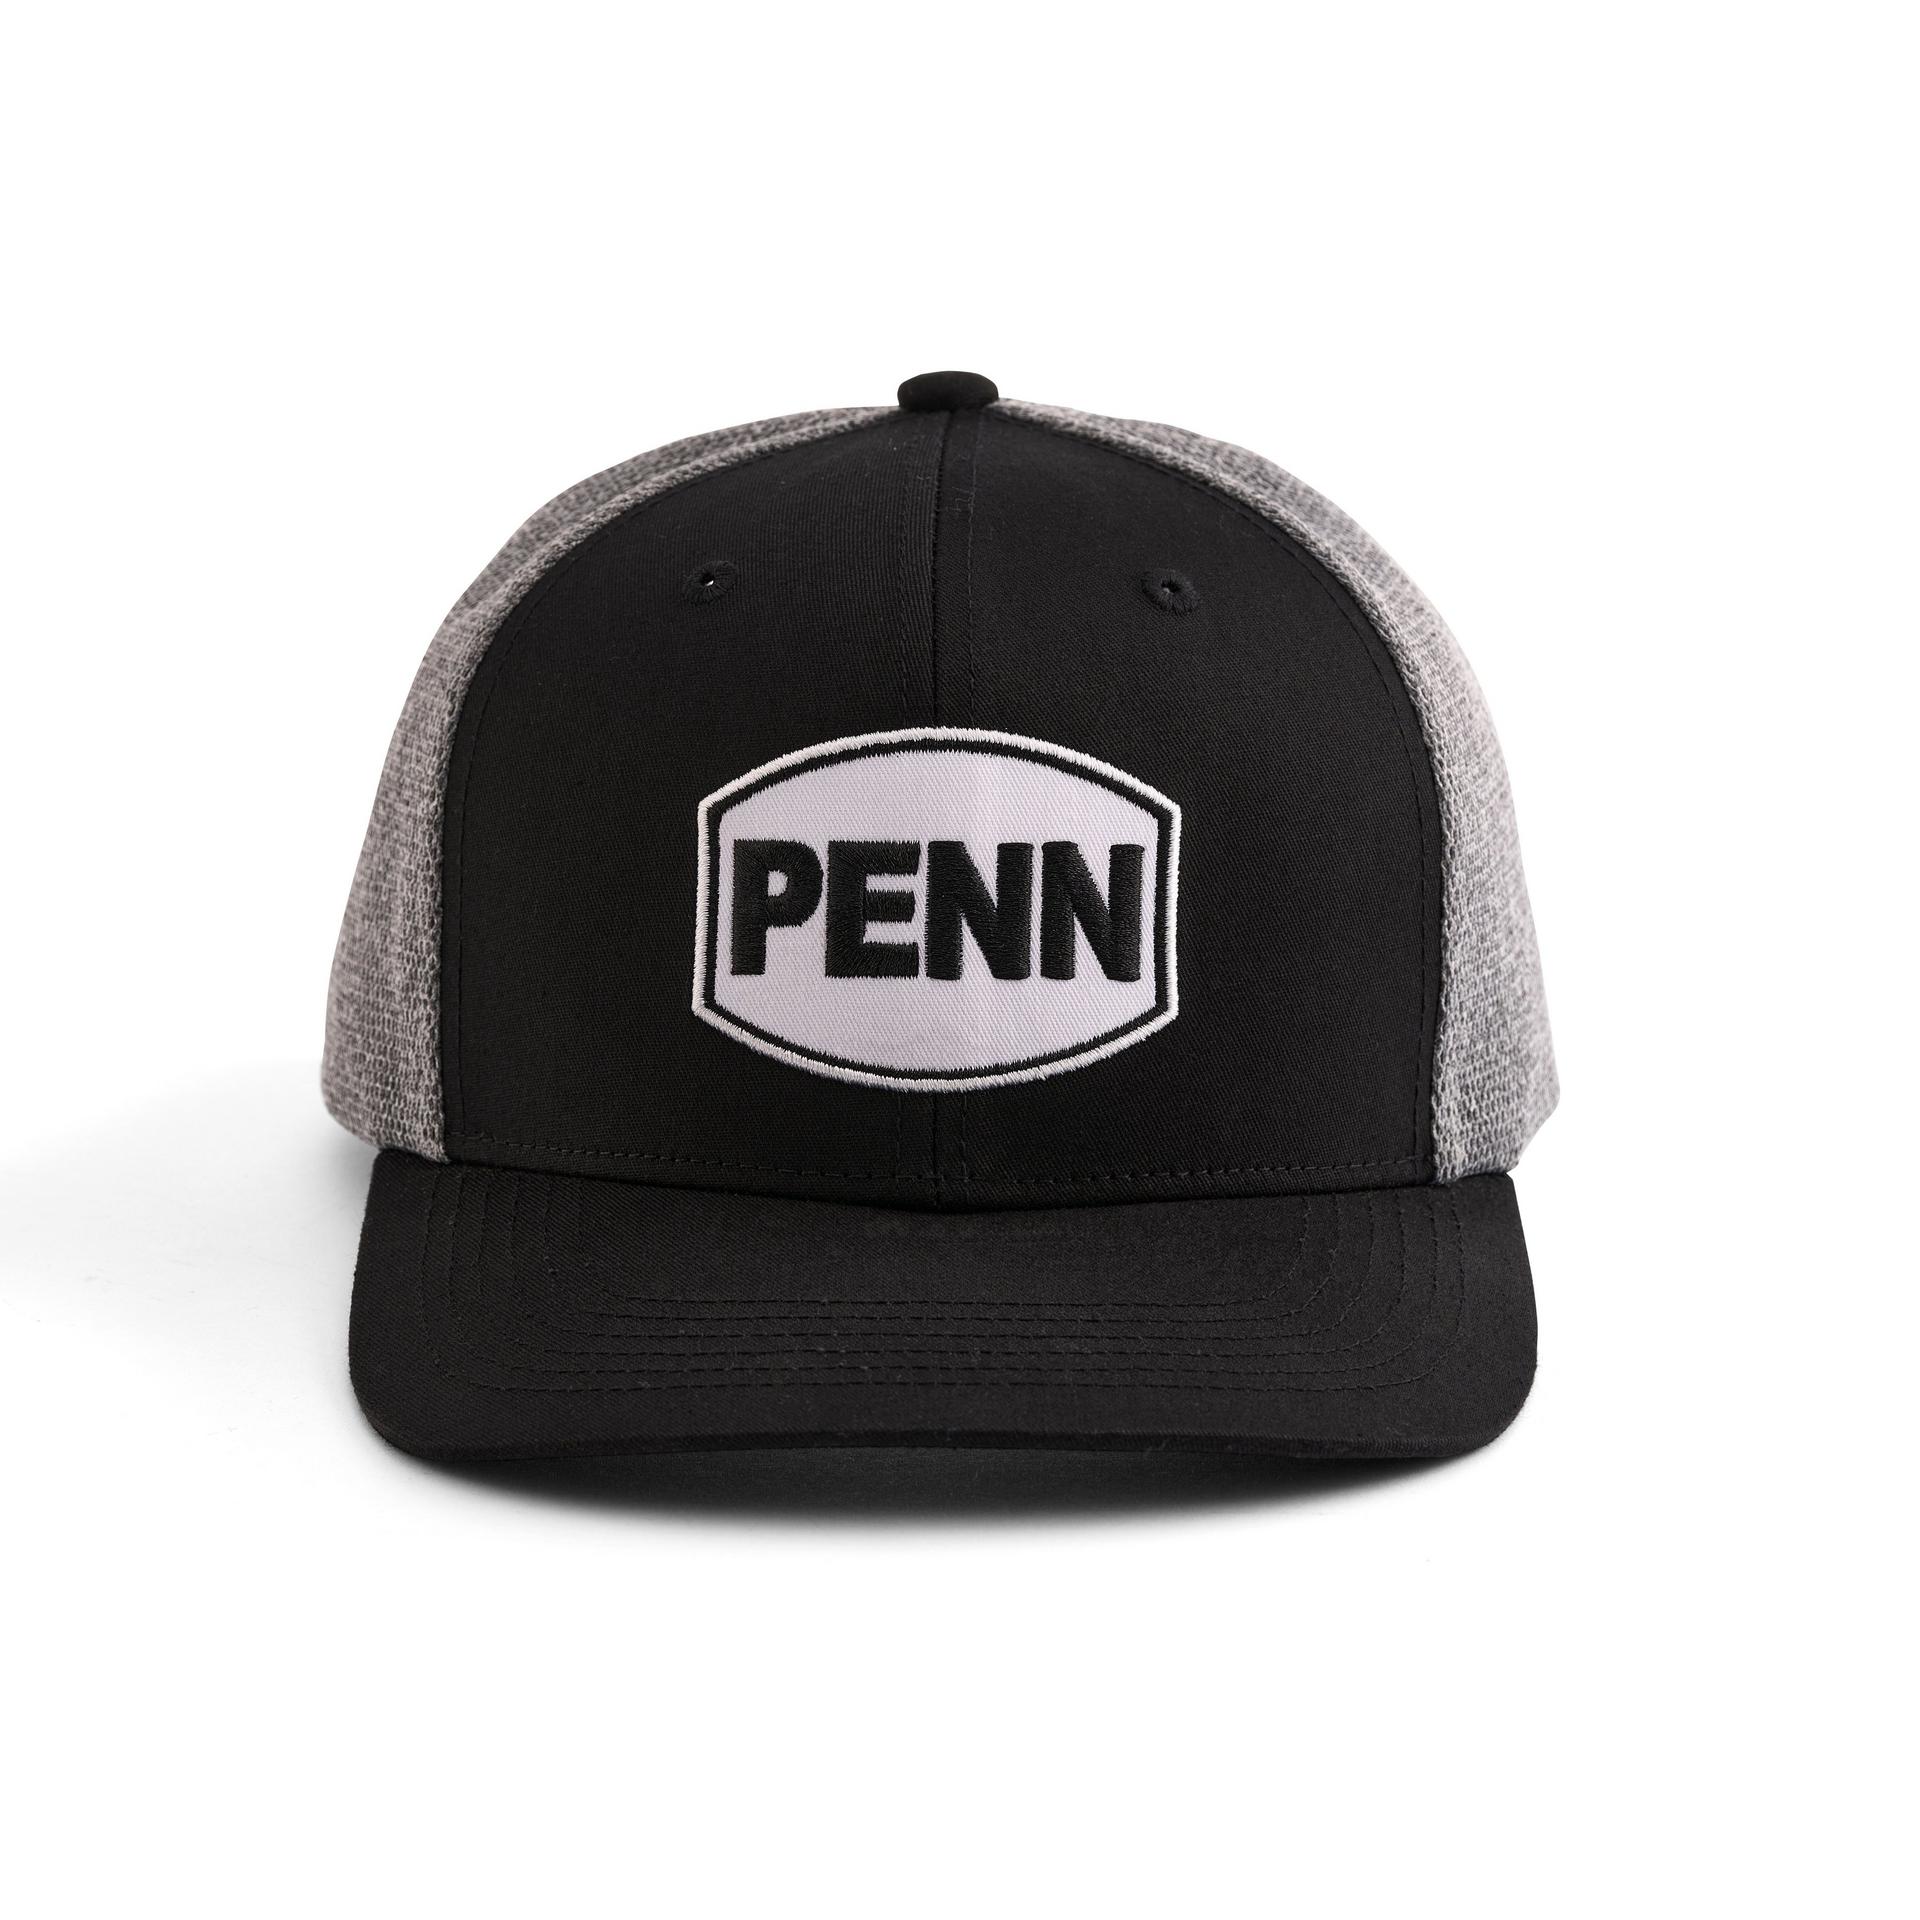 PELAGIC Fishing Hats & Headwear for sale